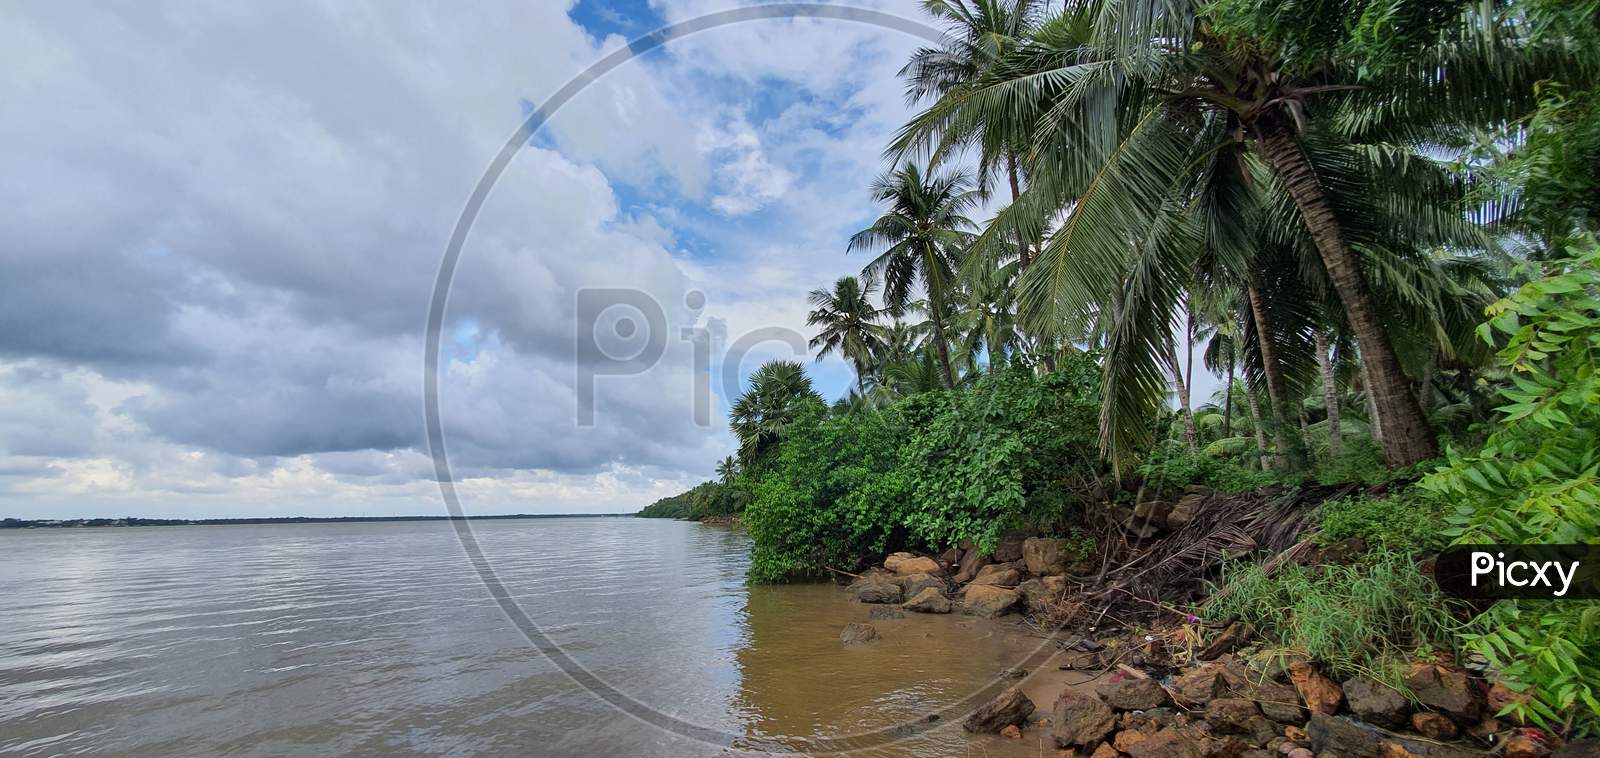 Scenic view of coconut trees on the Godavari river banks in Yanam